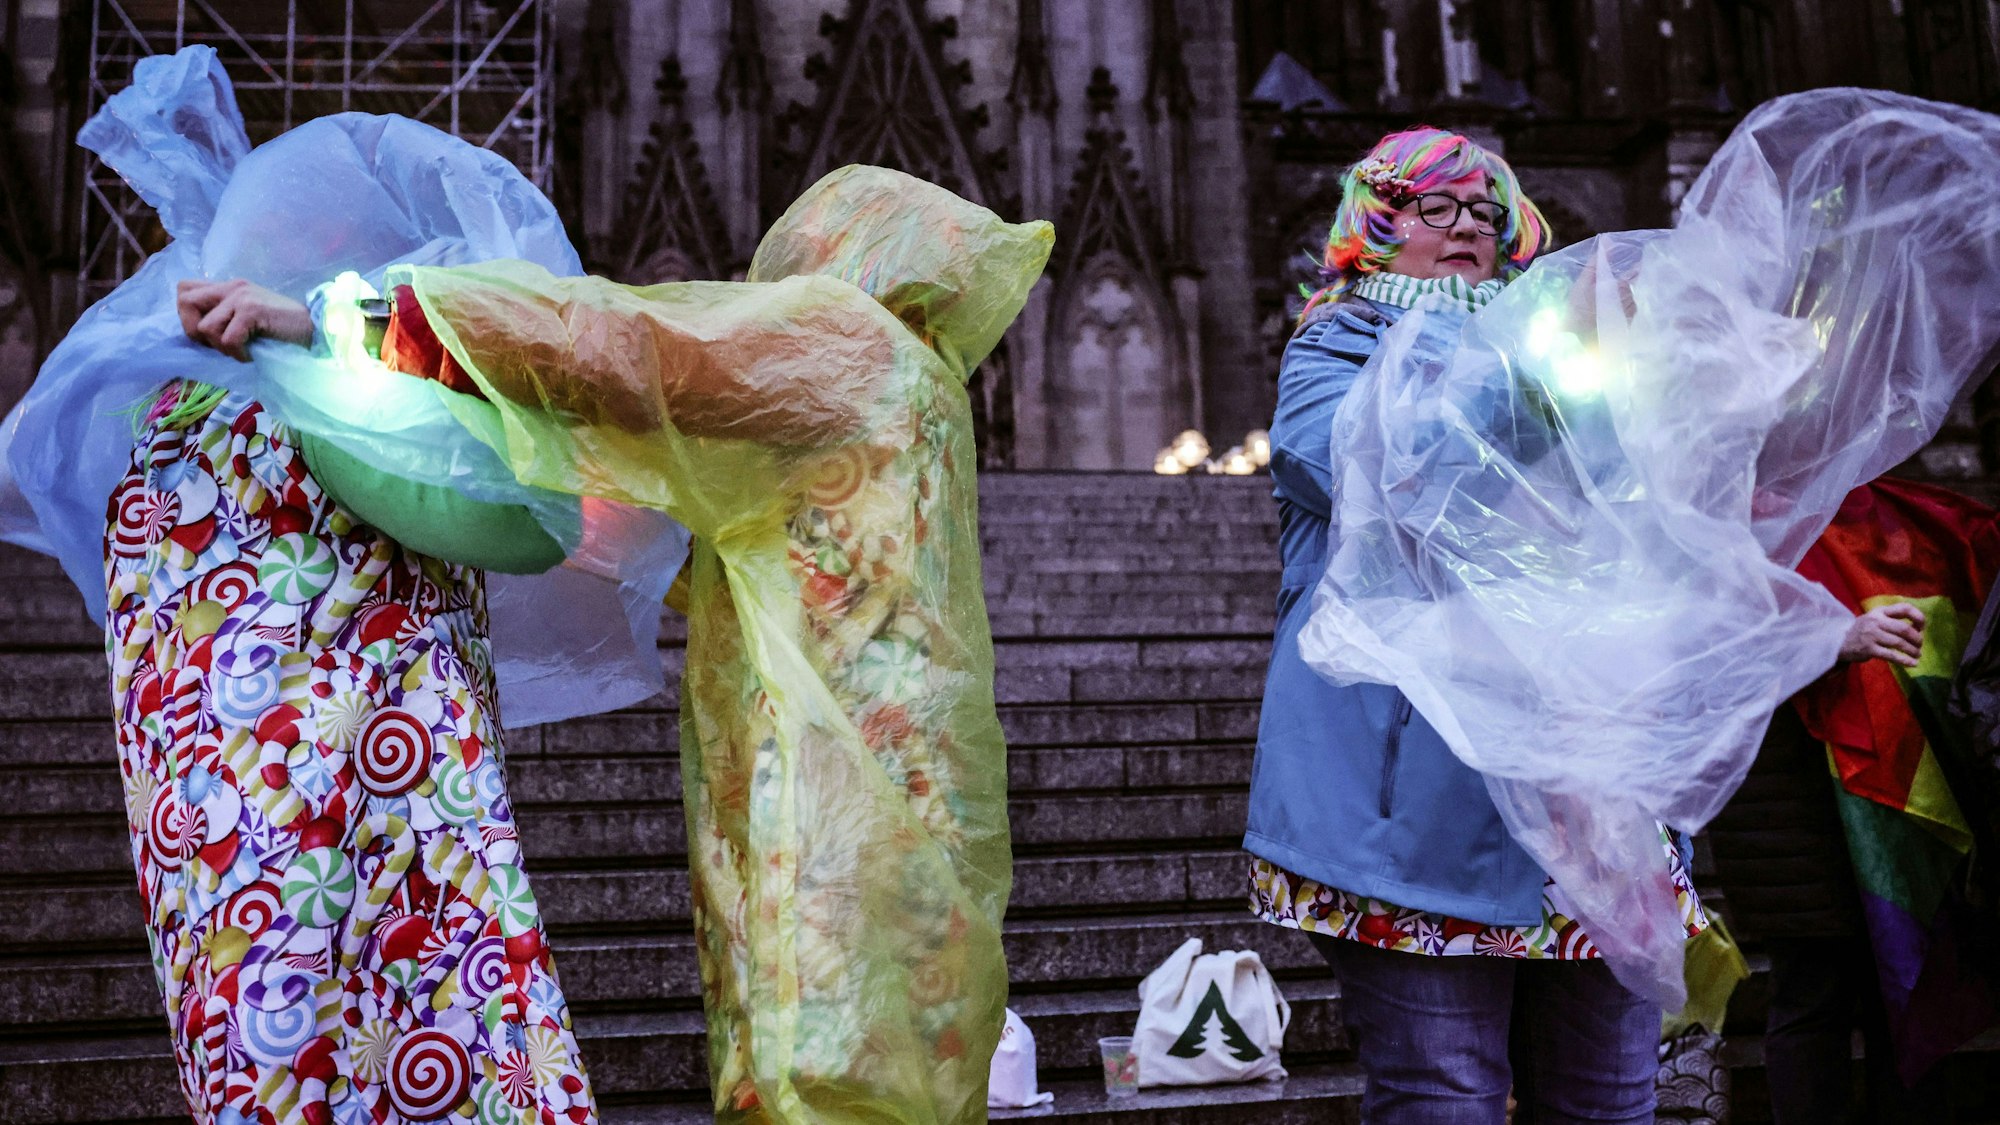 Karnevalisten ziehen sich am Dom einen Regenschutz über das Kostüm.